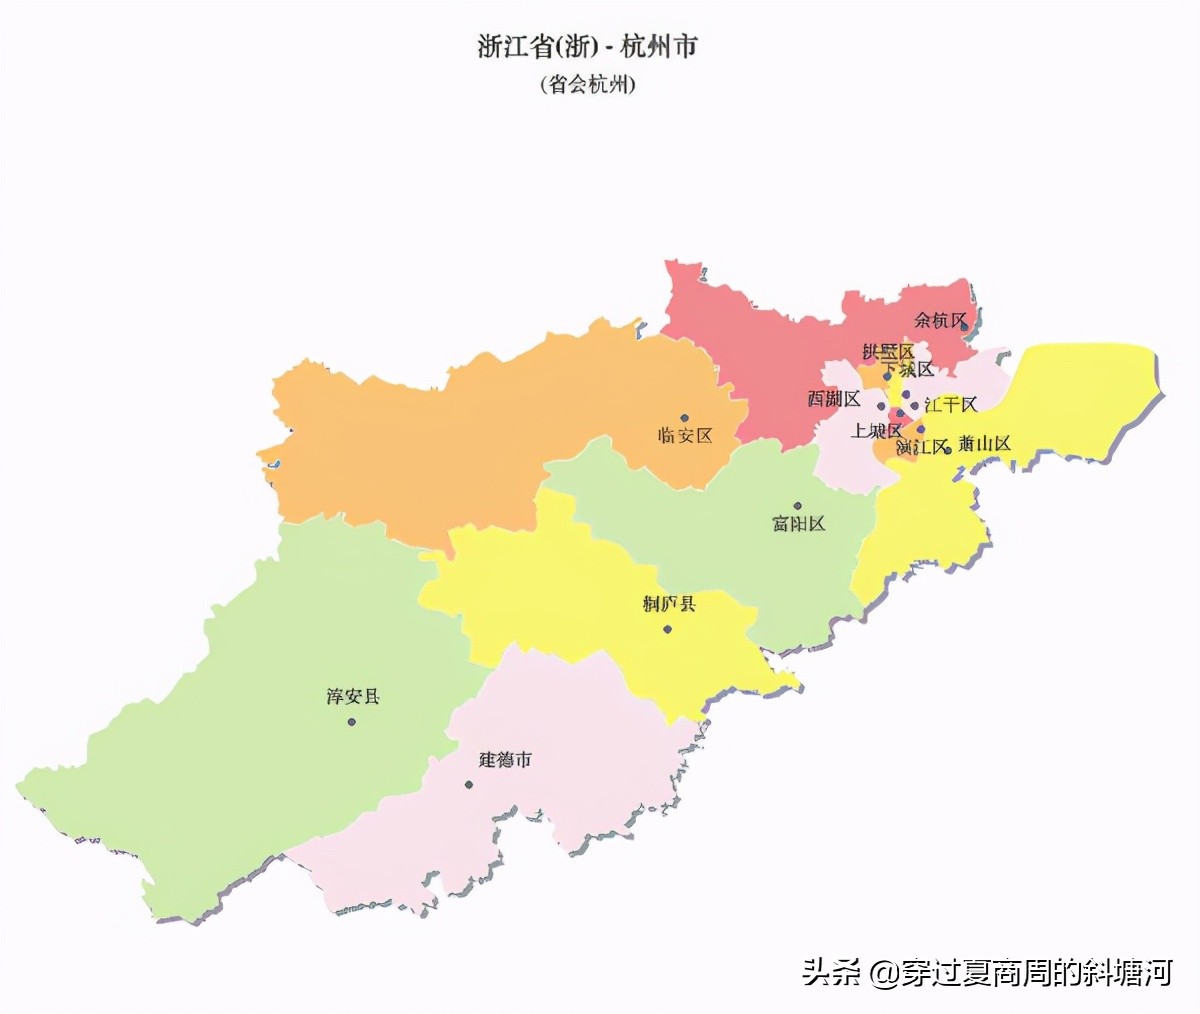 近几天杭州市部分行政区划优化调整的重磅新闻引起全网关注,好评如潮